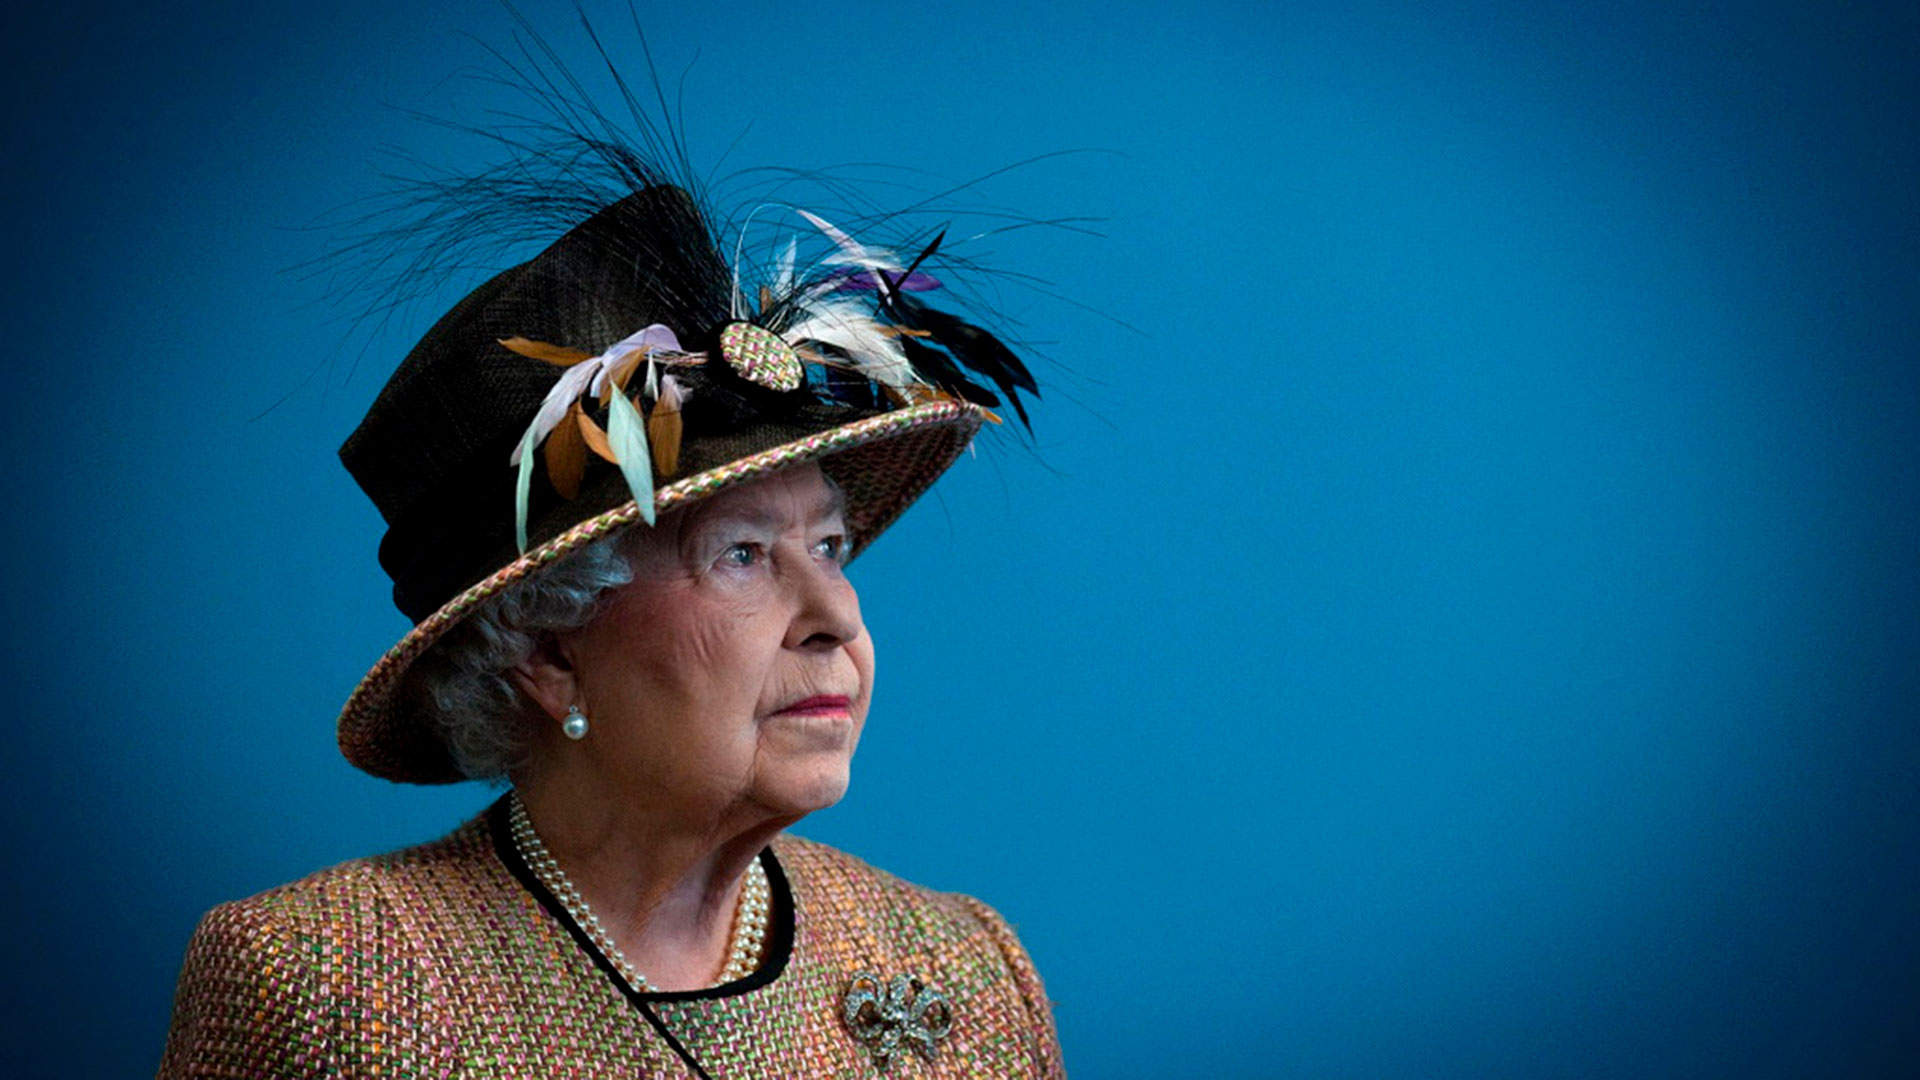 "El 90º cumpleaños de la reina Isabel" SEGUIRÁ ESTE AVISO. BUSCA 'Queen 90th" PARA TODAS LAS IMÁGENESLa reina Isabel de Gran Bretaña celebra su 90º cumpleaños el 21 de abril de 2016. (Reuters)